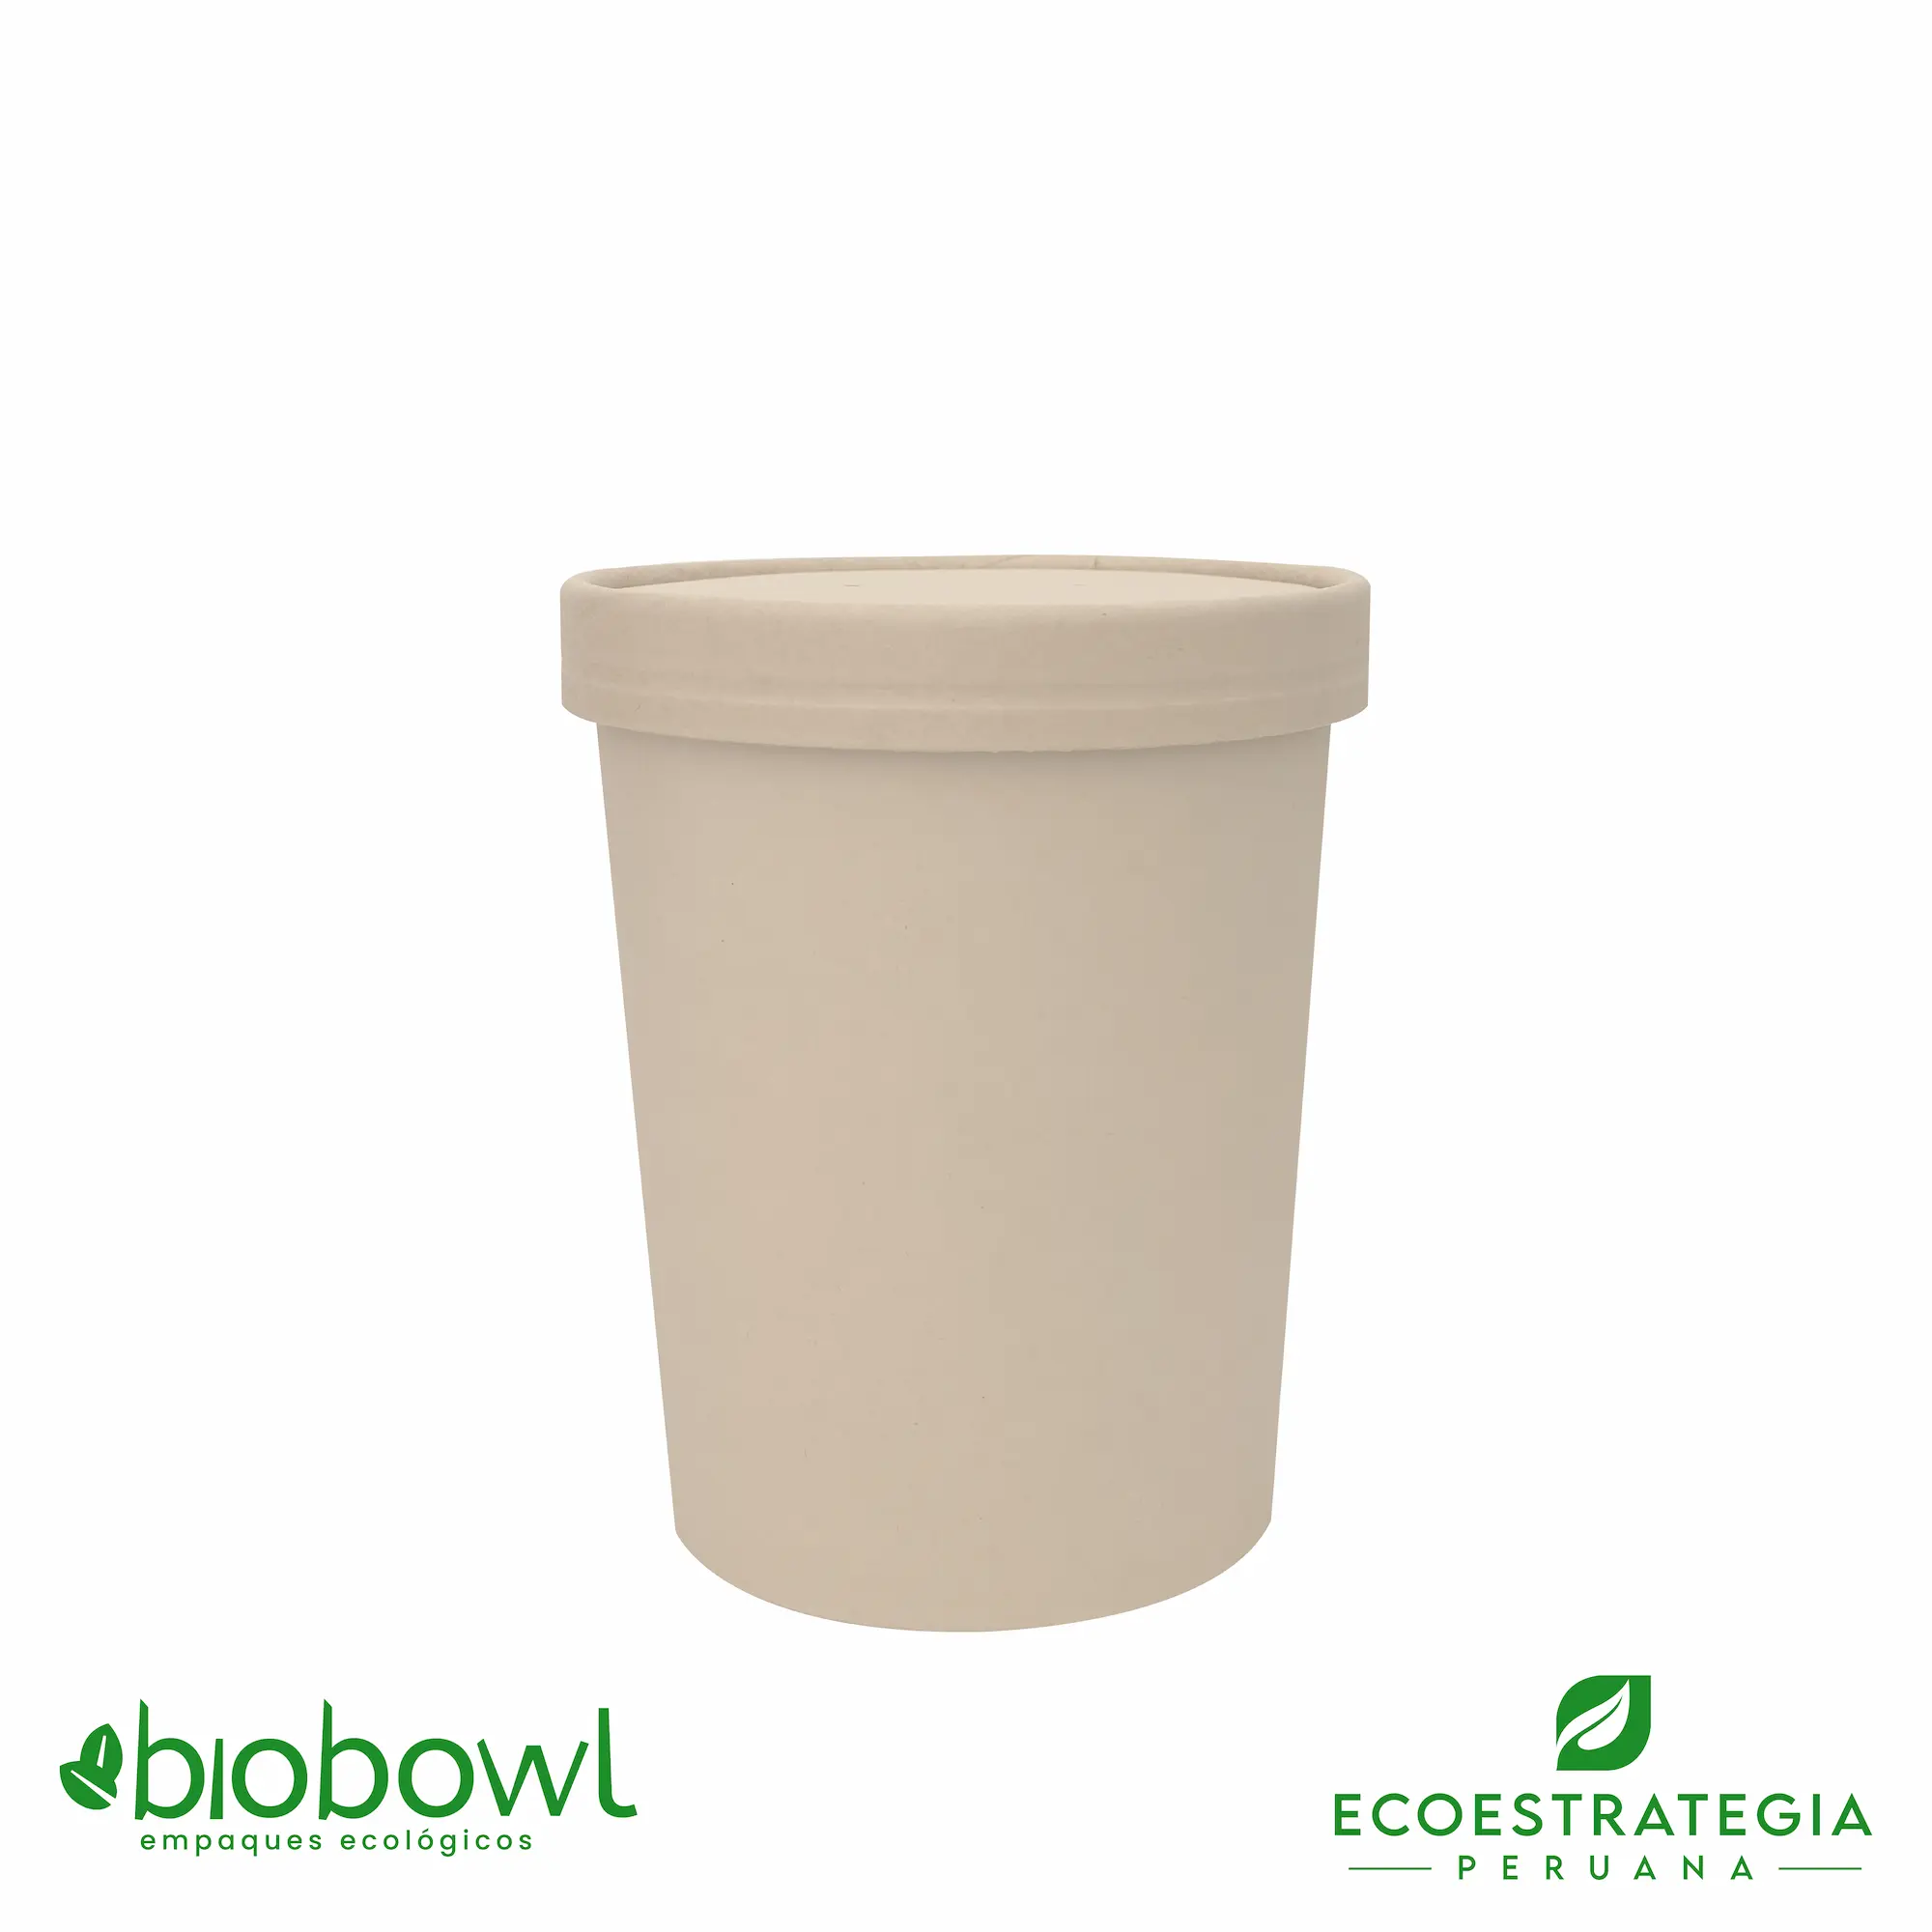 El bowl de bambú sopero biodegradable de 16oz o EP-S16 es conocido tambien como bowl bamboo sopero 16oz, bambú sopero 16oz, bambú salad 16oz, bowl para ensalada con tapa pet 16oz, sopero con fibra de bambú 16oz, bowl bambú ecologico, bowl bambú reciclable, bowl descartable, sopero bambú 16oz, sopero biodegradable 16 oz, sopero kraft 16oz, sopero pamolsa 16 oz, sopero biodegradable, soperos kraft con tapa, bowl kraft 16 oz con tapa, soup cup 16 oz + tapa bambú, bowl bambú 16 oz, bowl helado 16 oz, bowl de 16 onzas de kraft, bowl de 16 oz de bambú, envase biodegradable de 16 oz, envase 16 oz con tapa, contenedores bambú 16 oz, contenedores kraft 16 oz, envase circular 16 oz, bowl celulosa de bambú 16 oz, bowl hondo biodegradable 16 oz, envases soperos con tapa 16 oz, envase circular 16 oz bioform kraft, sopero fibra de bambú 16 oz, envase para sopa 16 oz, envase para helado 16 oz, envase barril 16 oz biodegradable, envase bambú 16 oz, importadores de sopero 16 oz bambú, distribuidores de sopero 16 oz bambú, mayorista de sopero 16 oz bambú